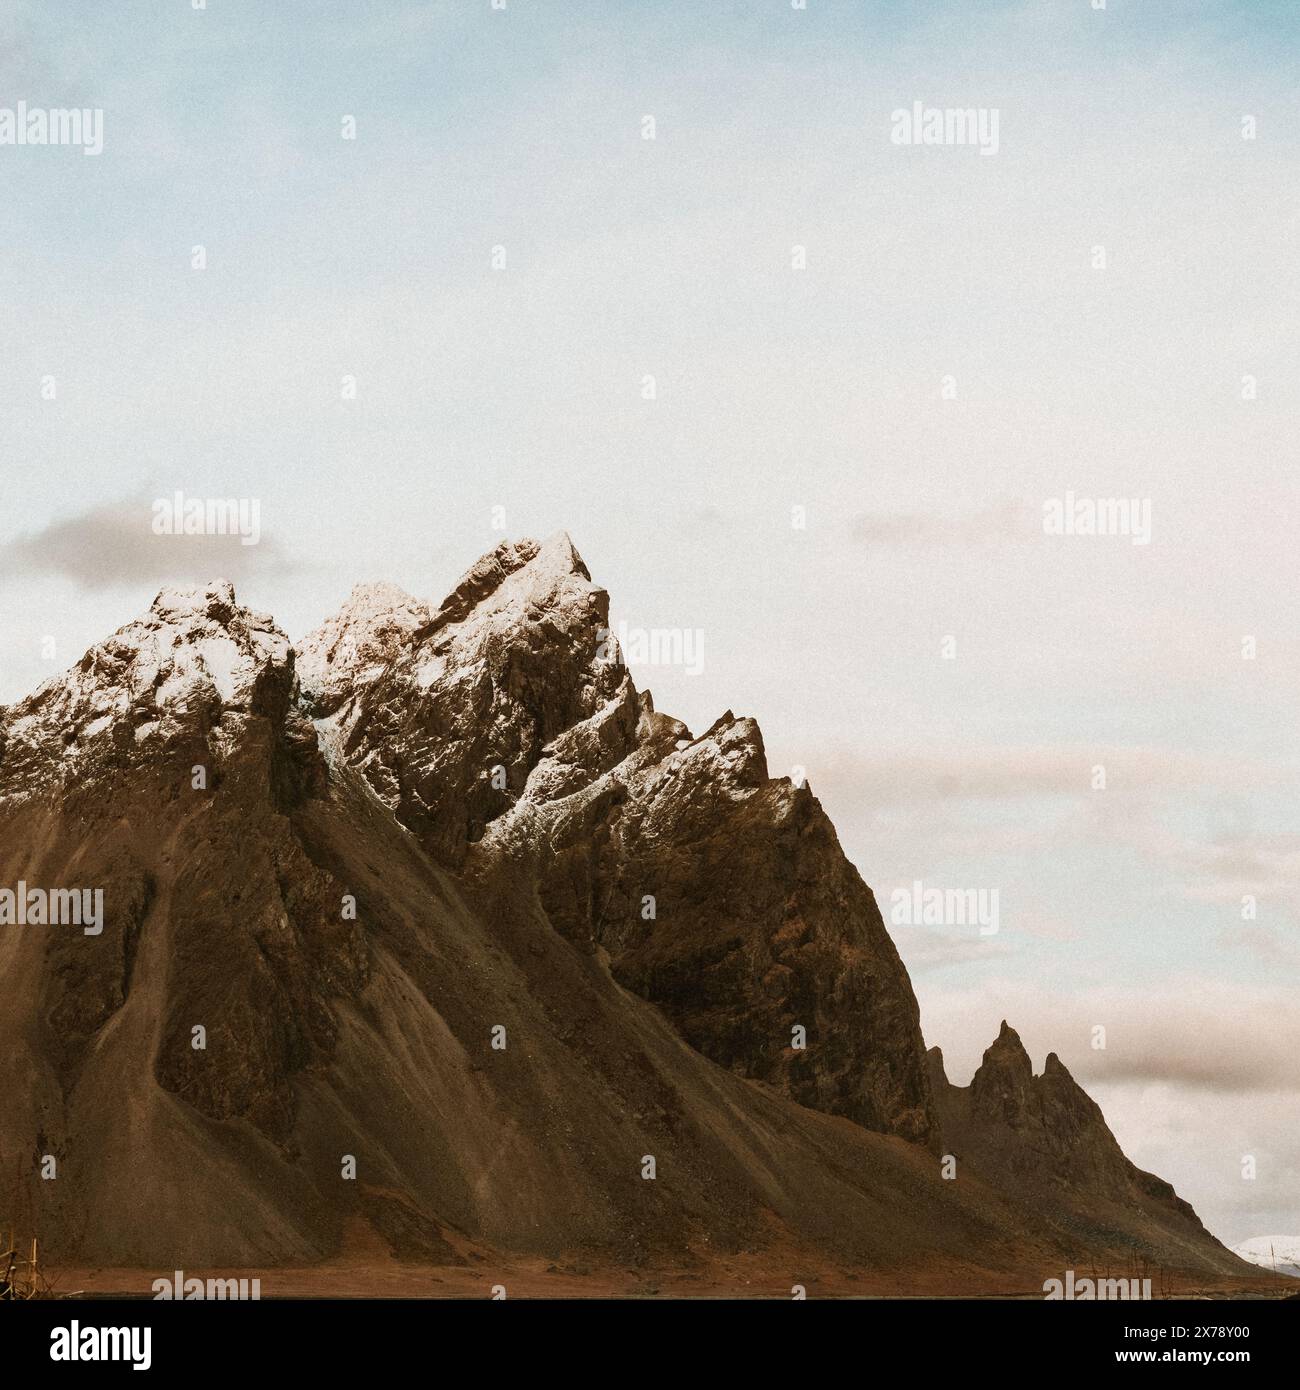 Vette spettacolari delle montagne Vestrahorn spolverate di neve a Stokksnes, Islanda sud-orientale Foto Stock